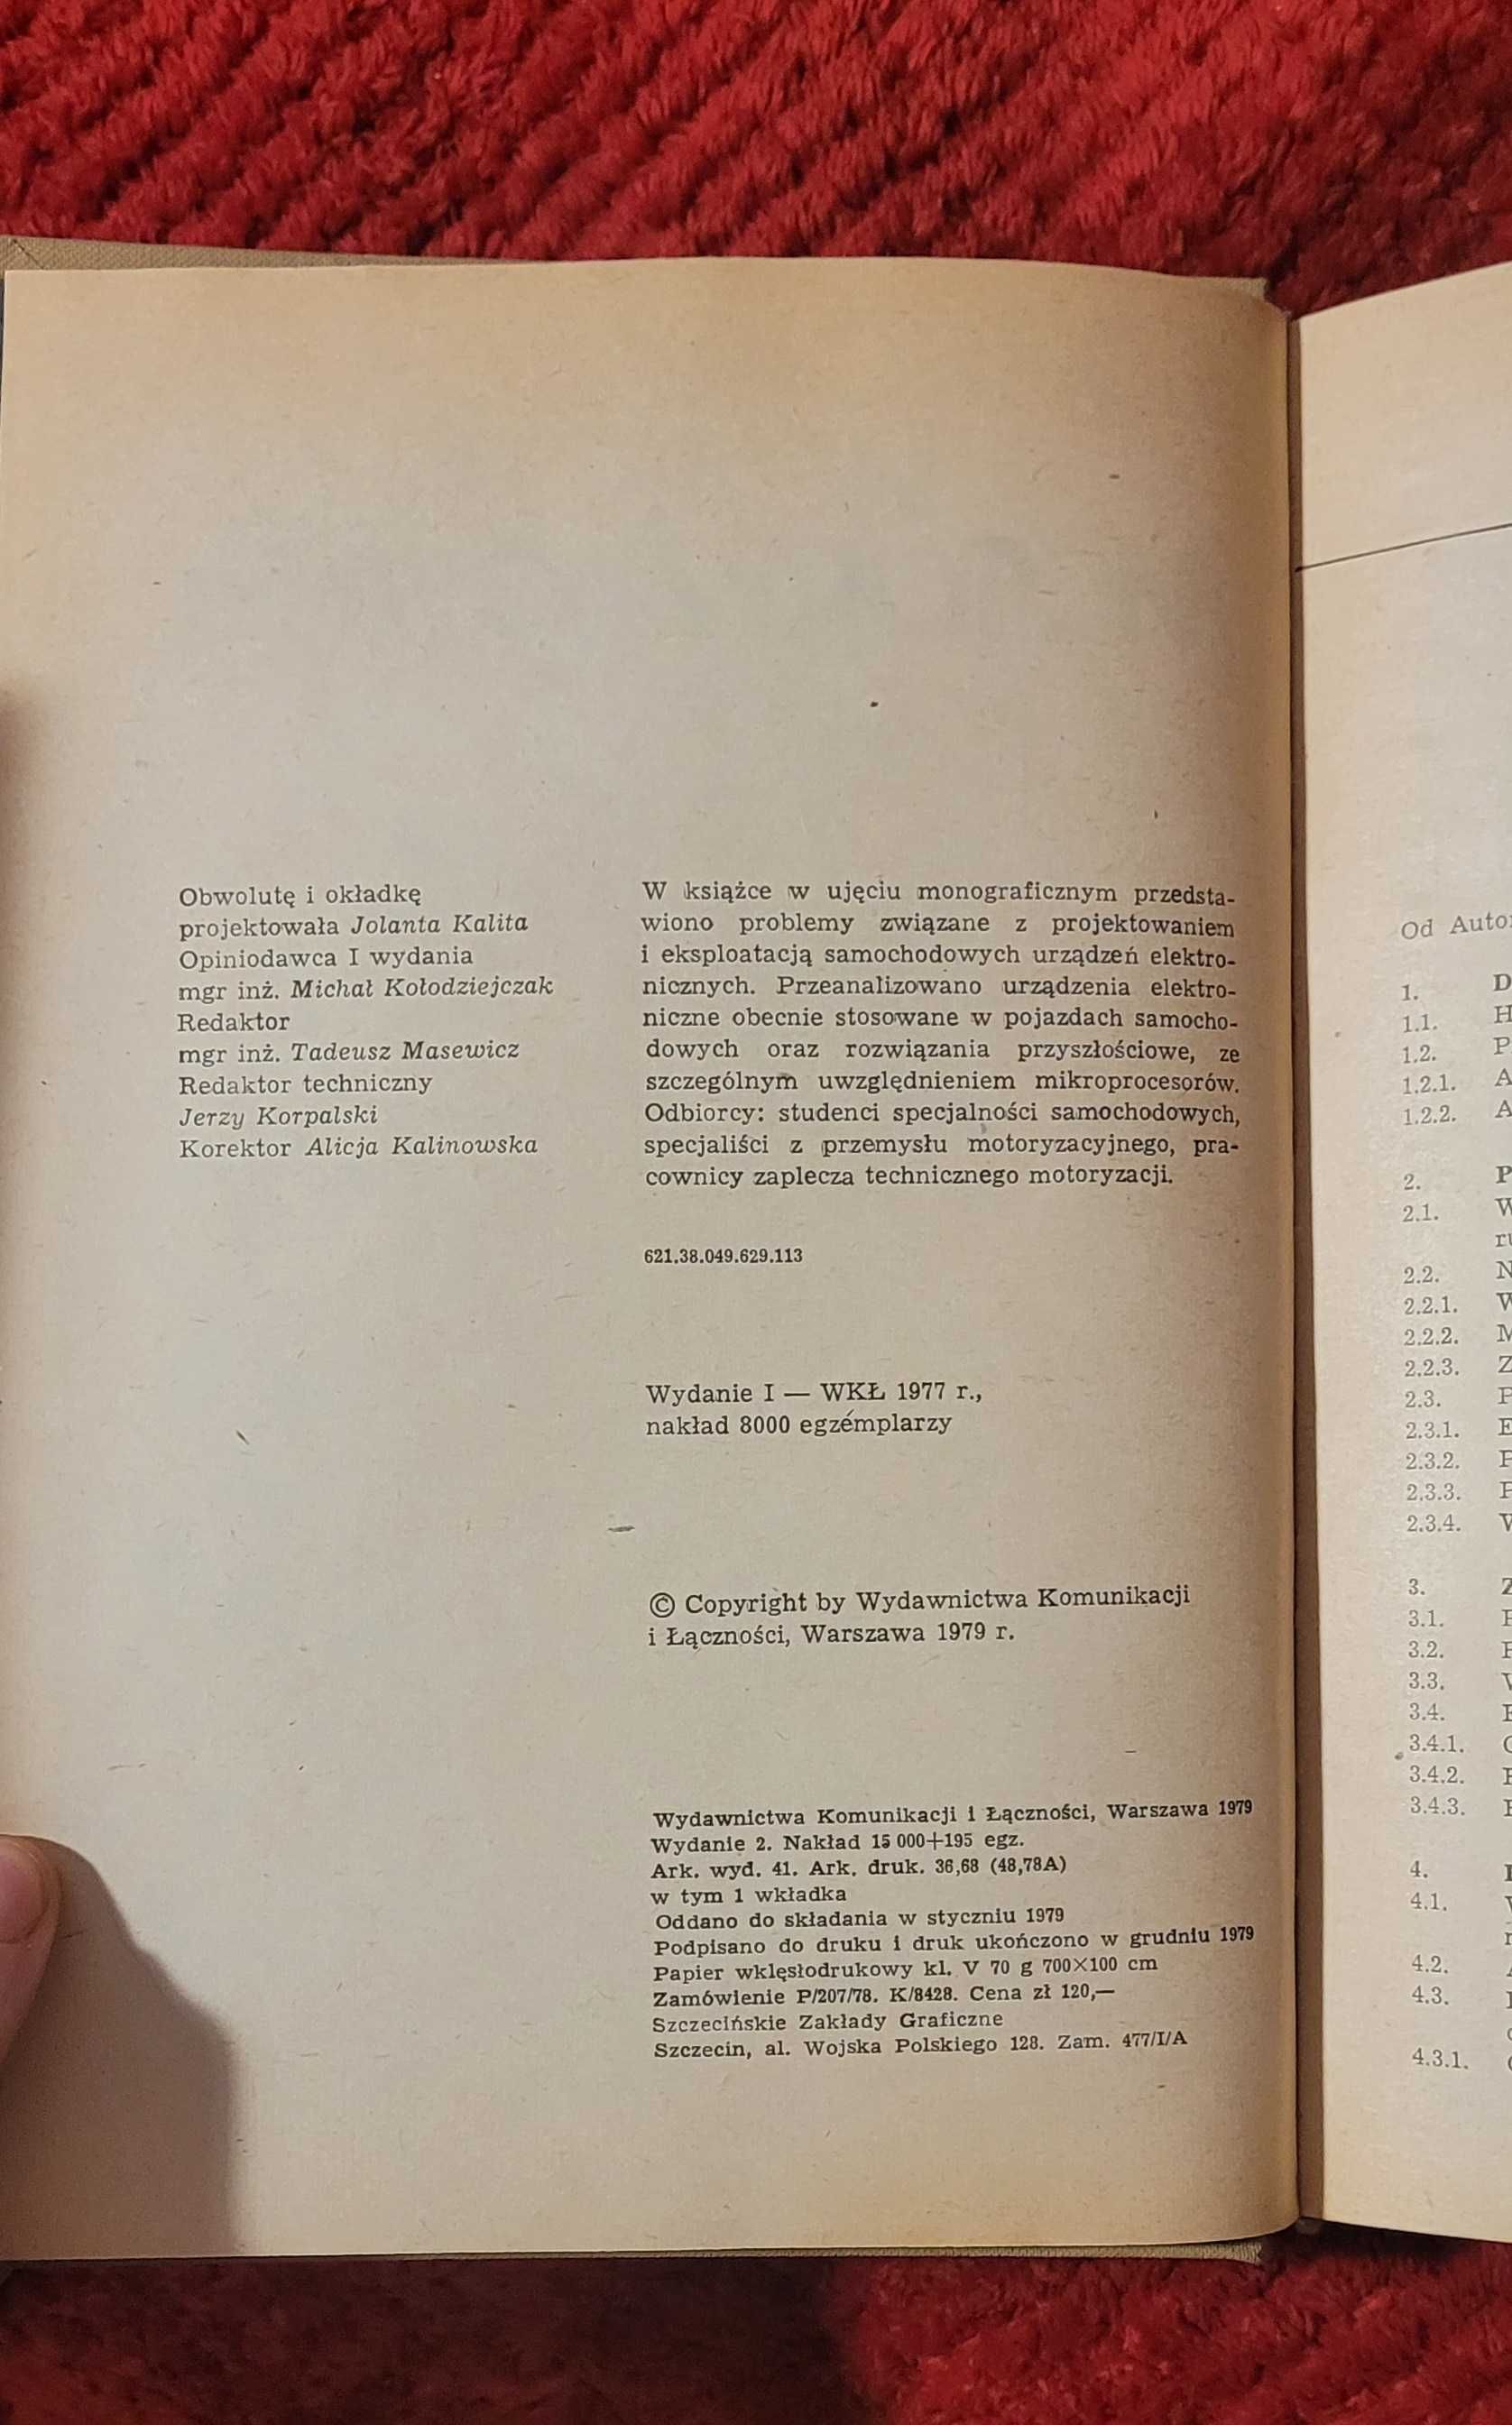 Książka "Elektronika w technice motoryzacyjnej" M. Konopiński